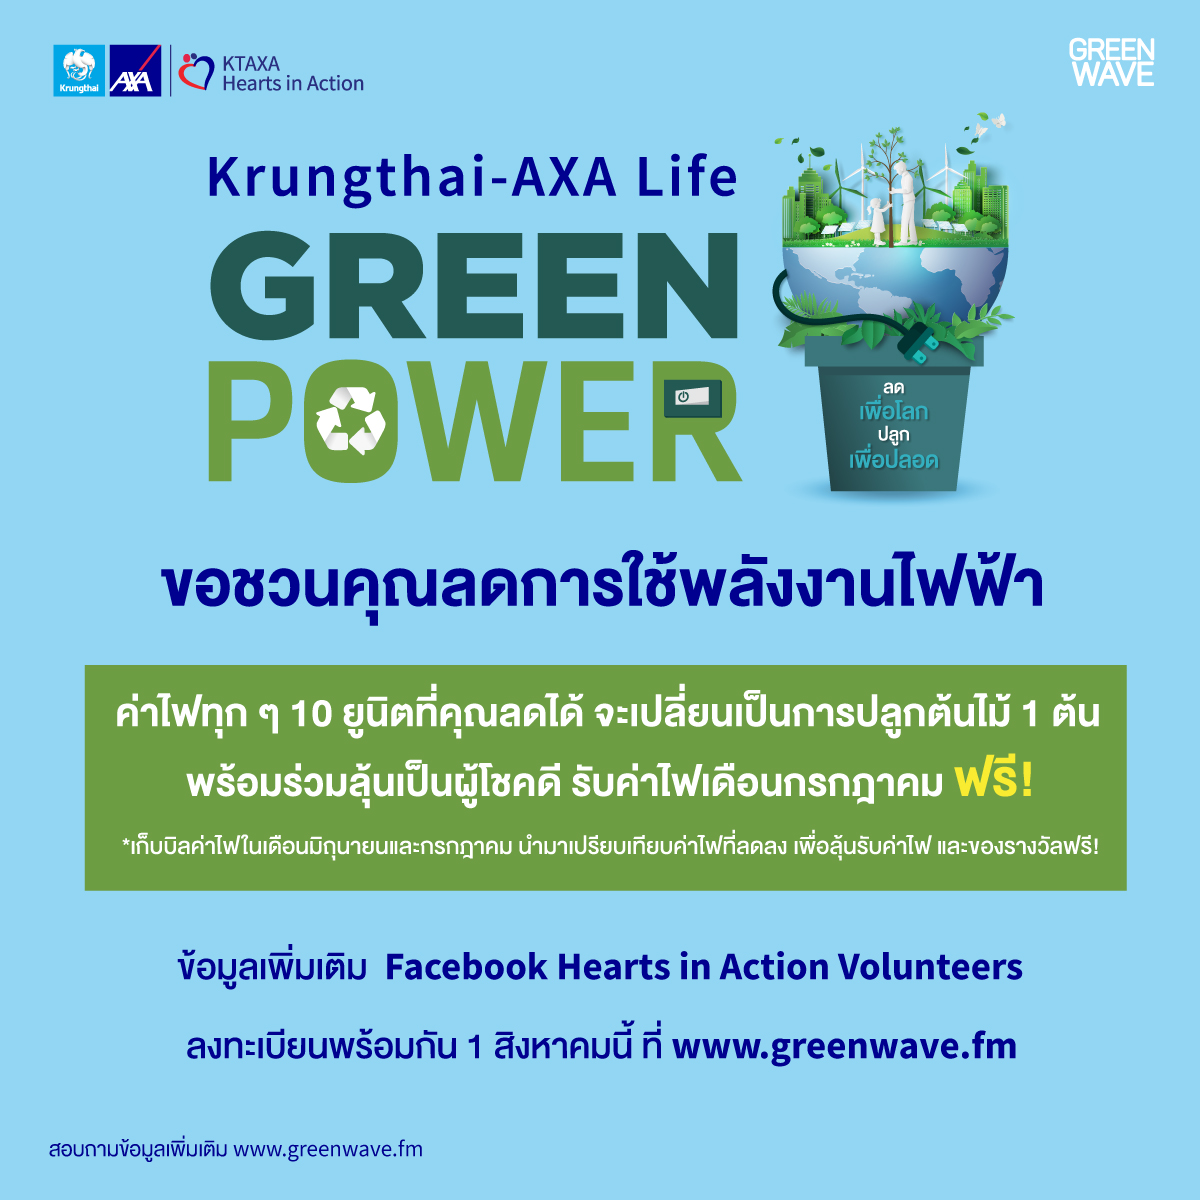 กรุงไทย-แอกซ่า ประกันชีวิต ร่วมกับ กรีนเวฟ 106.5 เอฟเอ็ม  เชื่อในพลังสีเขียว จัดแคมเปญ “กรุงไทย-แอกซ่า ประกันชีวิต Green Power ลดเพื่อโลก ปลูกเพื่อปลอด”